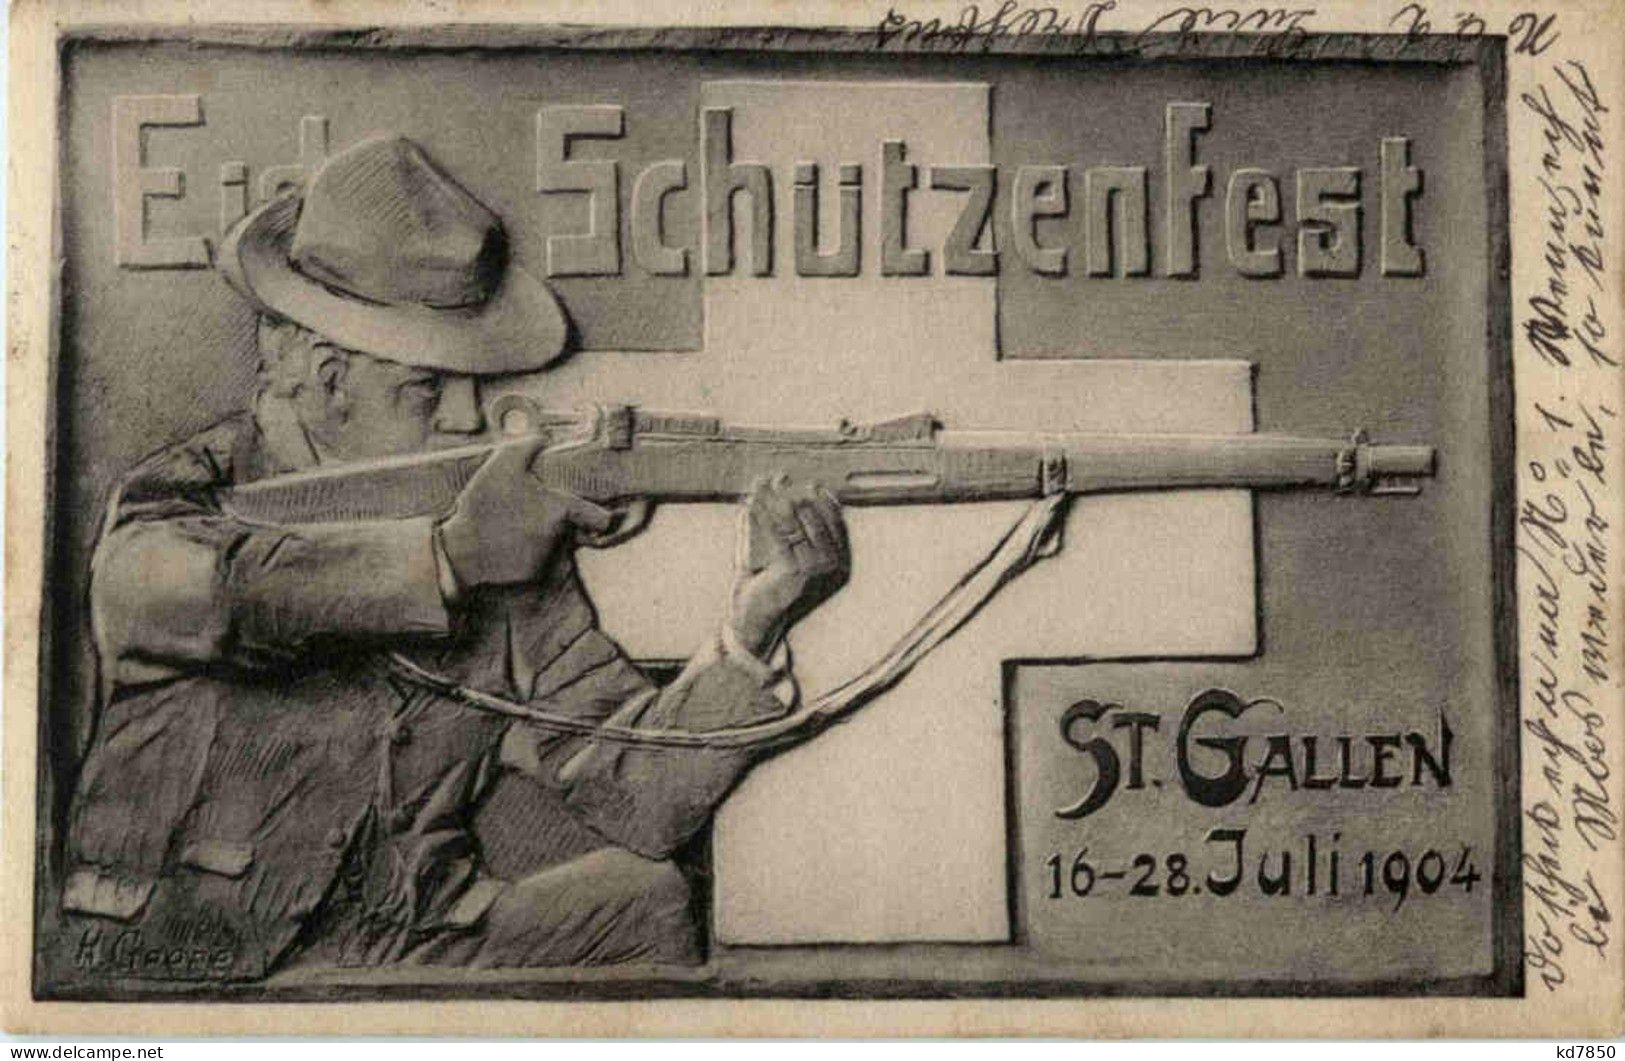 St. Gallen - Schützenfest 1904 - Saint-Gall